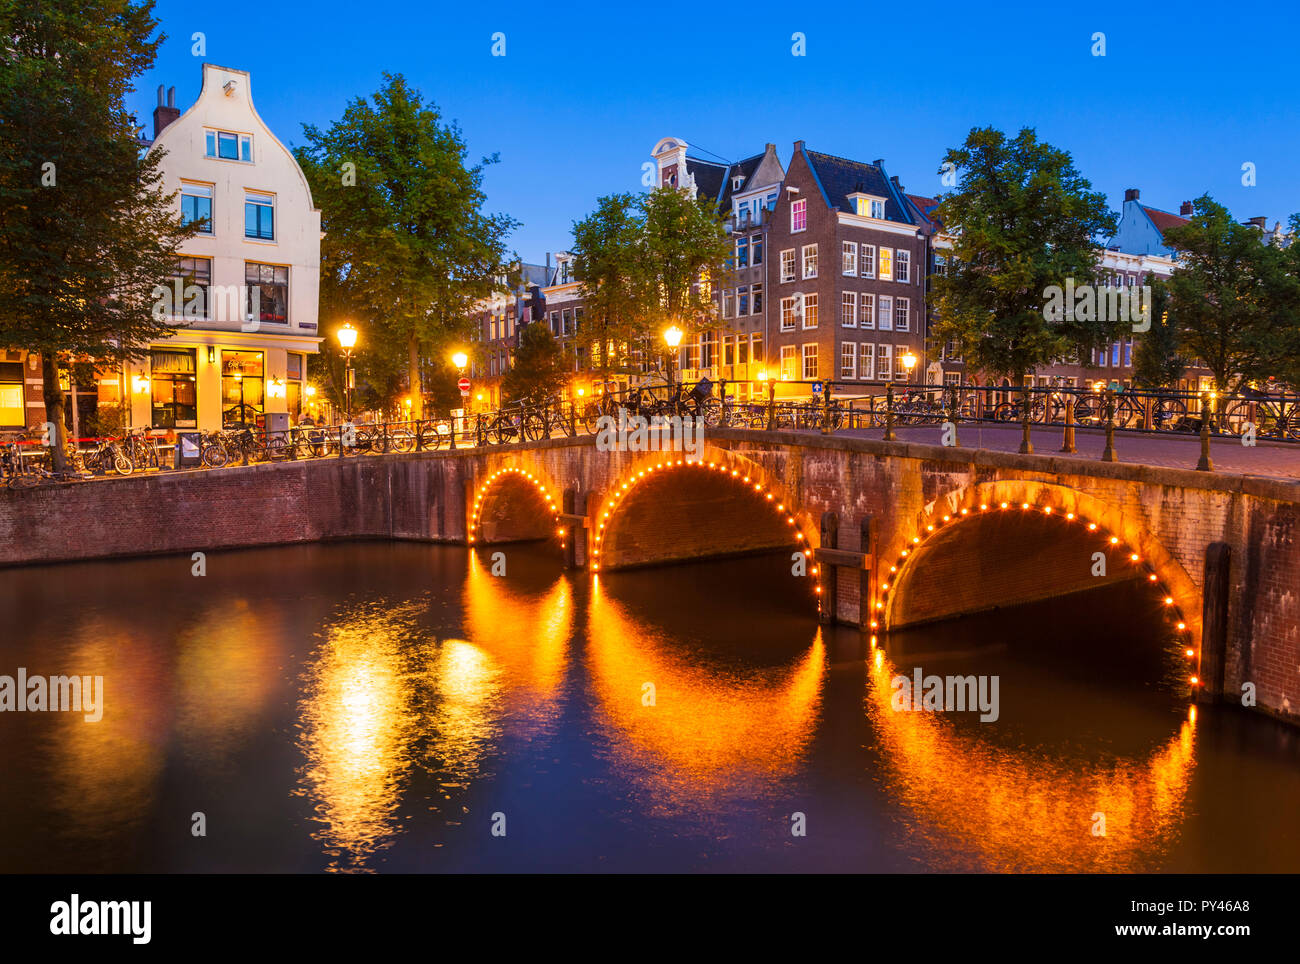 Amsterdam canal lumineux Pont sur canal Keizergracht et Leliegracht bridge Amsterdam Hollande Pays-bas eu Europe Banque D'Images